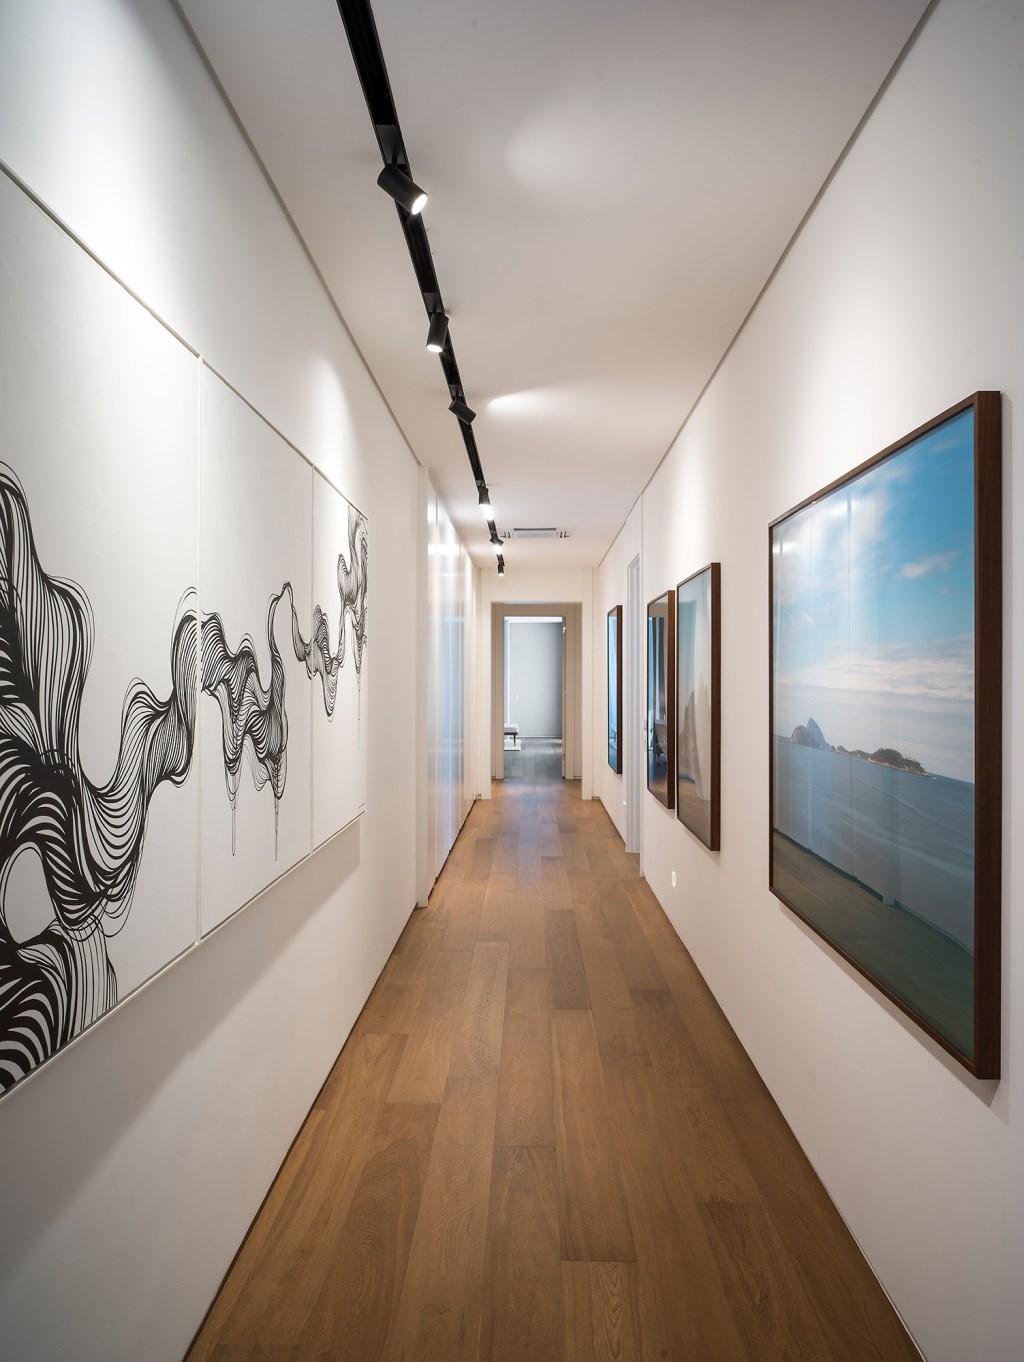 Paola Ribeiro assina apartamento de 810 m² repleto de arte. Na foto, corredor com quadros.